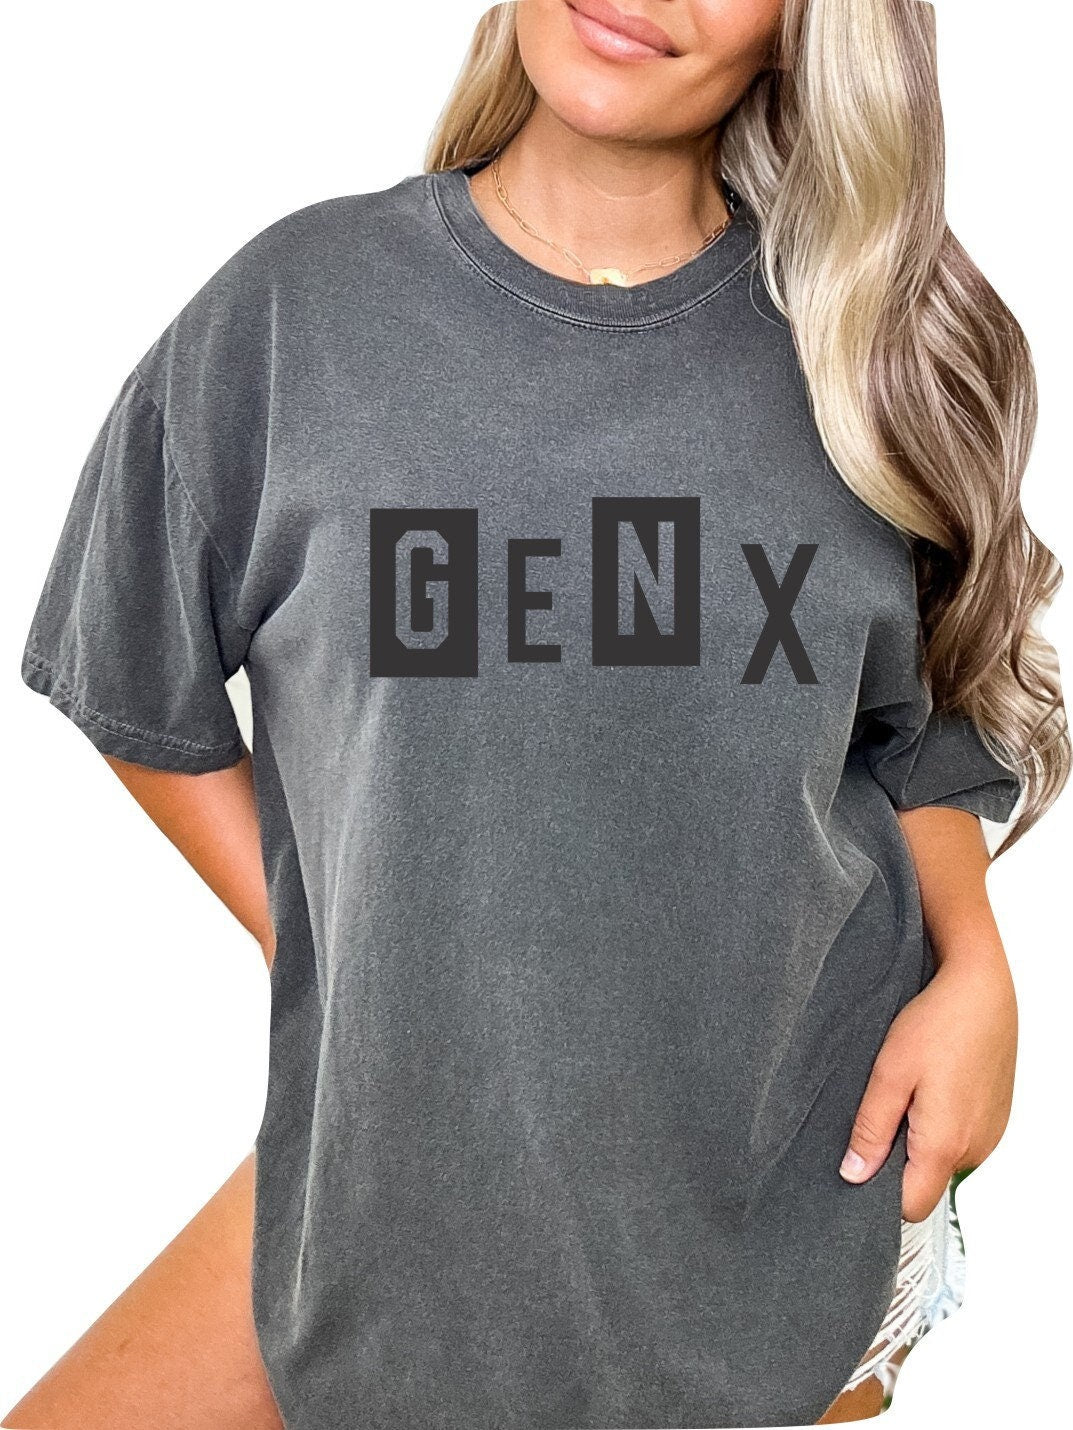 Gen X Block Colors TShirt Generation X Shirt Unisex Shirt Gen X T-Shirt Gen X TShirt Generation X T-Shirt Generation X T-Shirt